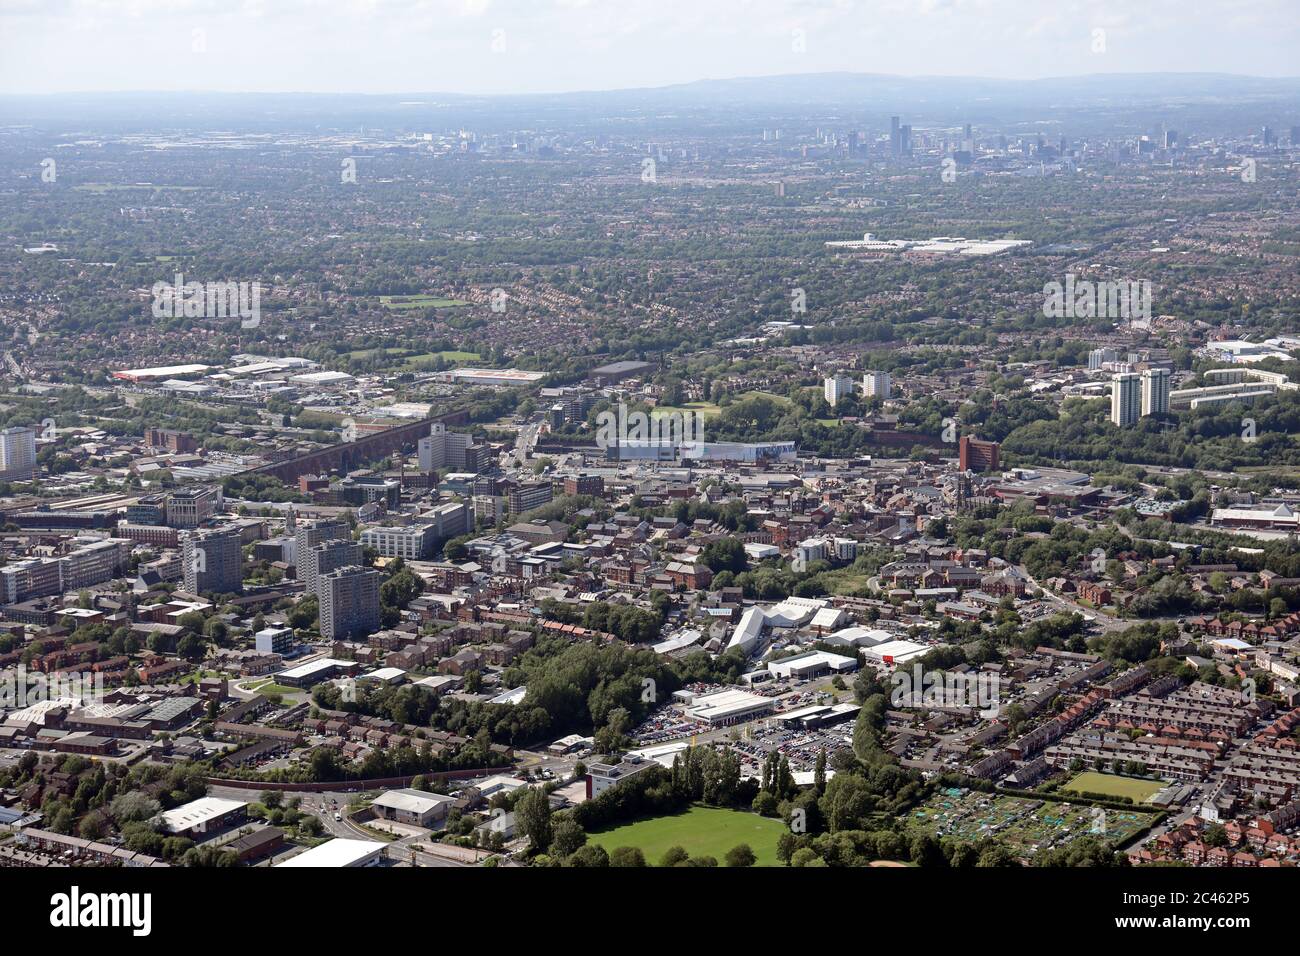 Vue aérienne du centre-ville de Stockport avec Hempshaw Industrial Estate en premier plan et les gratte-ciel de Manchester au loin Banque D'Images